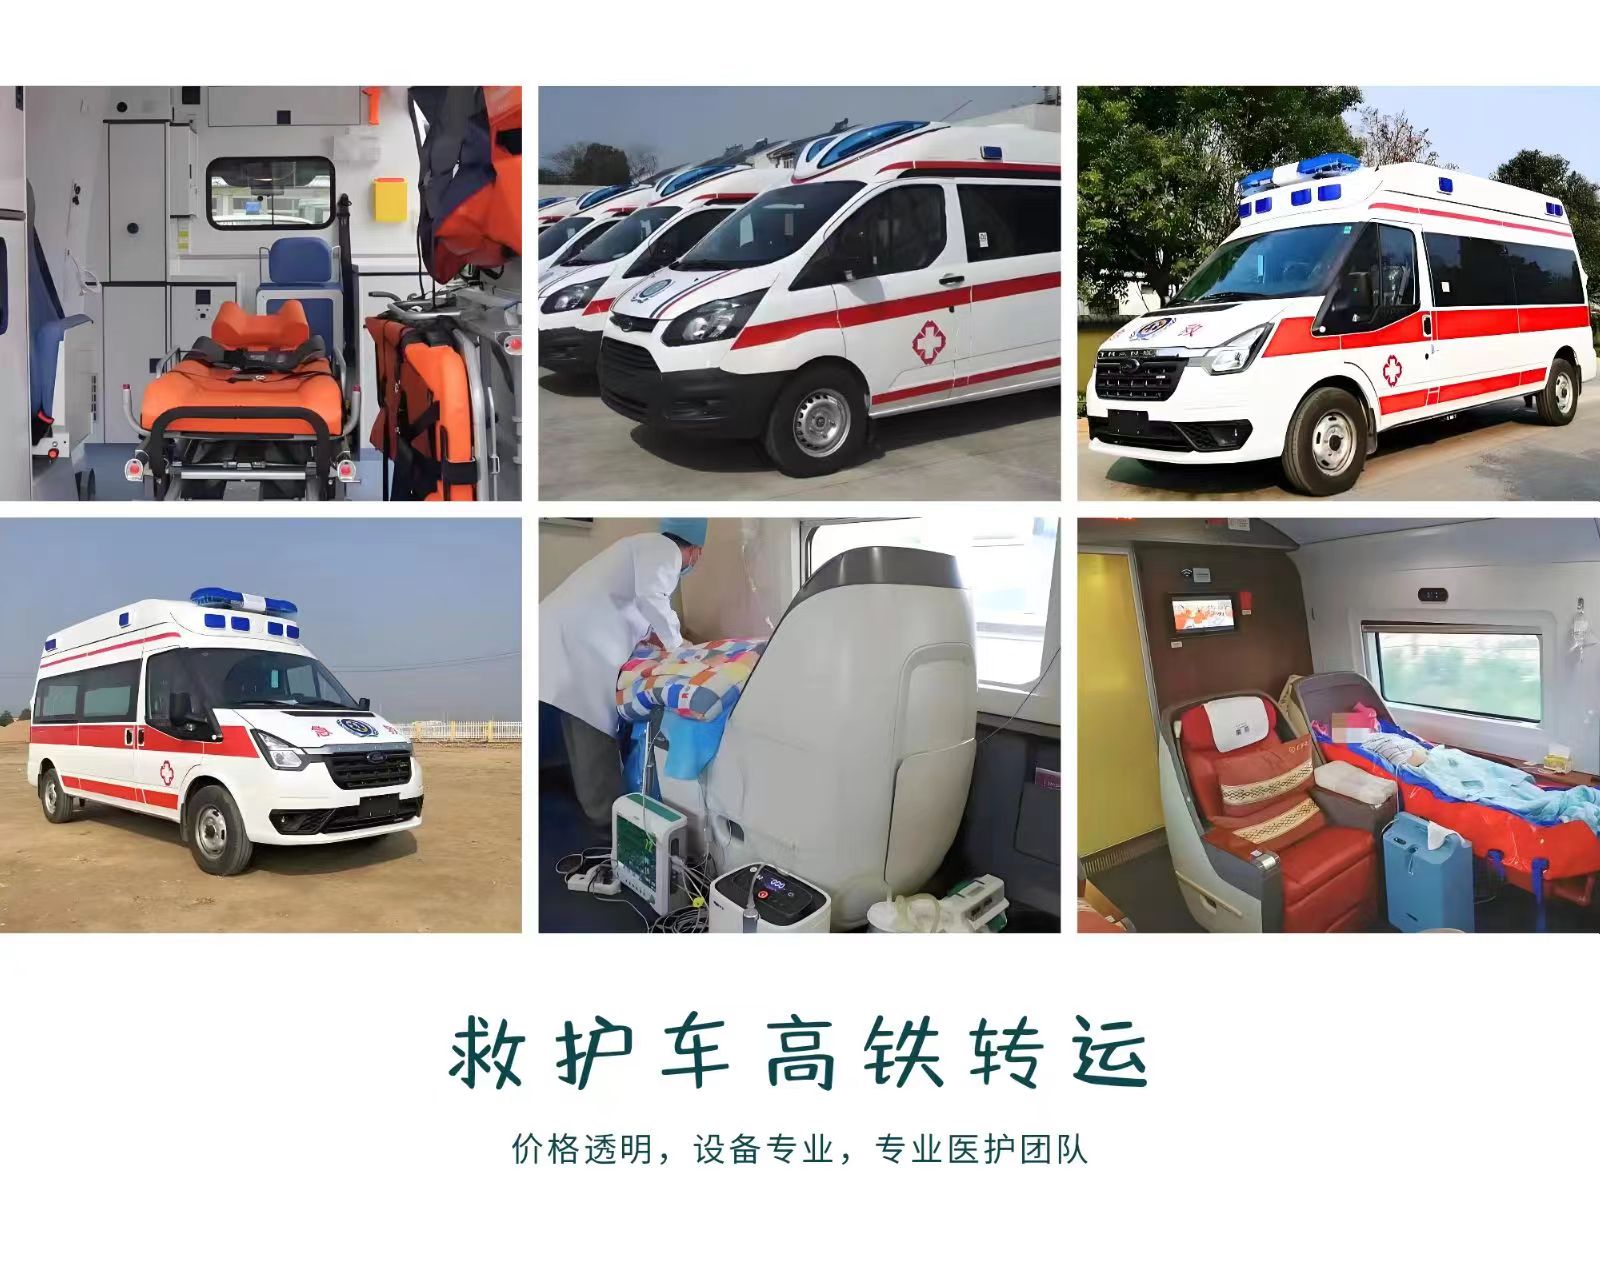 亳州非急救转运平台-私人救护车出租-紧急就近派车